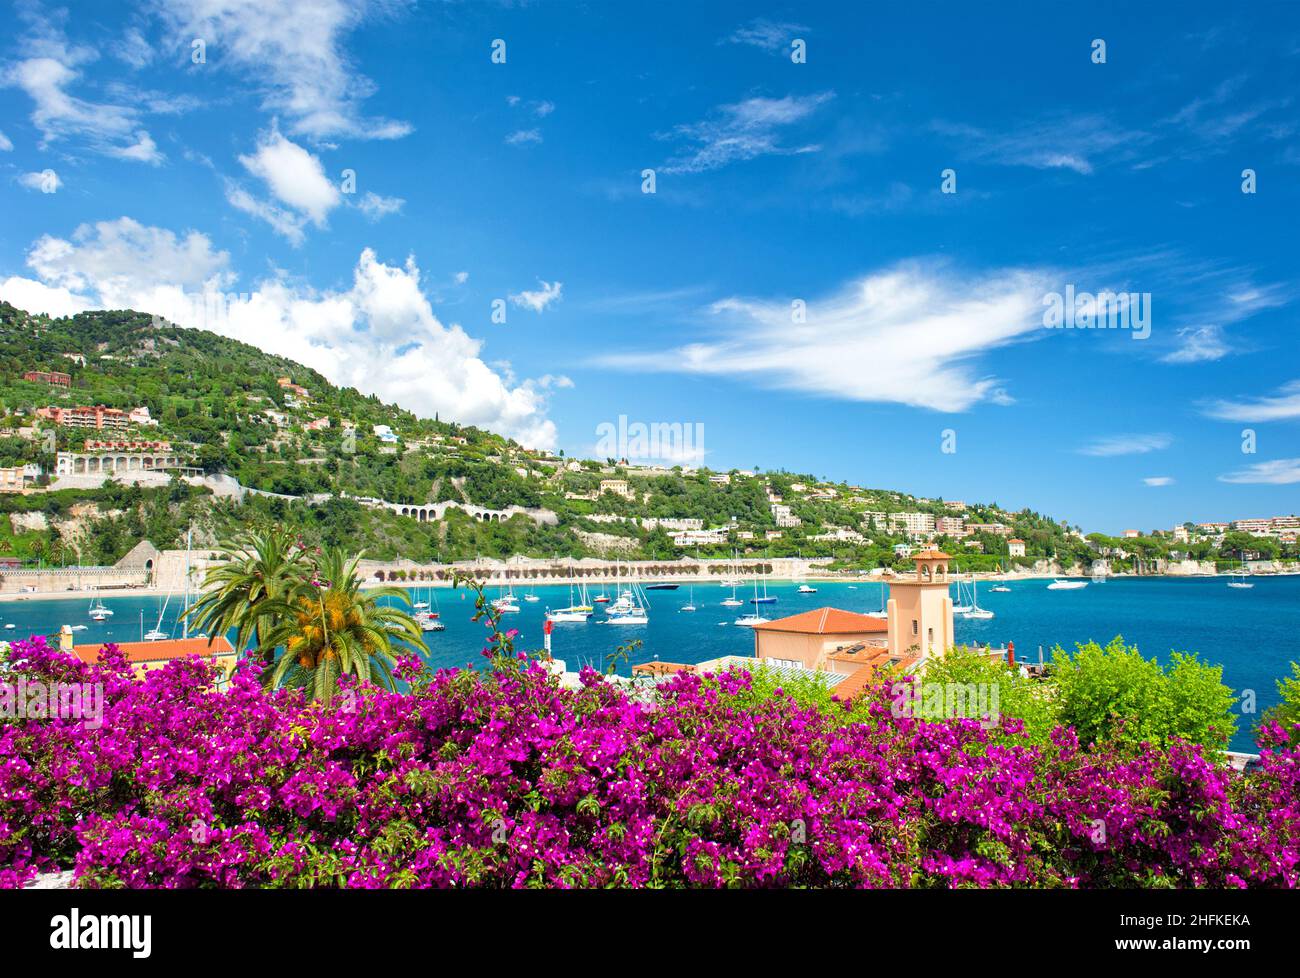 Mediterrane Landschaft mit Meer, Himmel, Rhododendronblüten. Französische wiedergeburt, Blick auf Villefranche-sur-Mer bei Nizza und Monaco Stockfoto